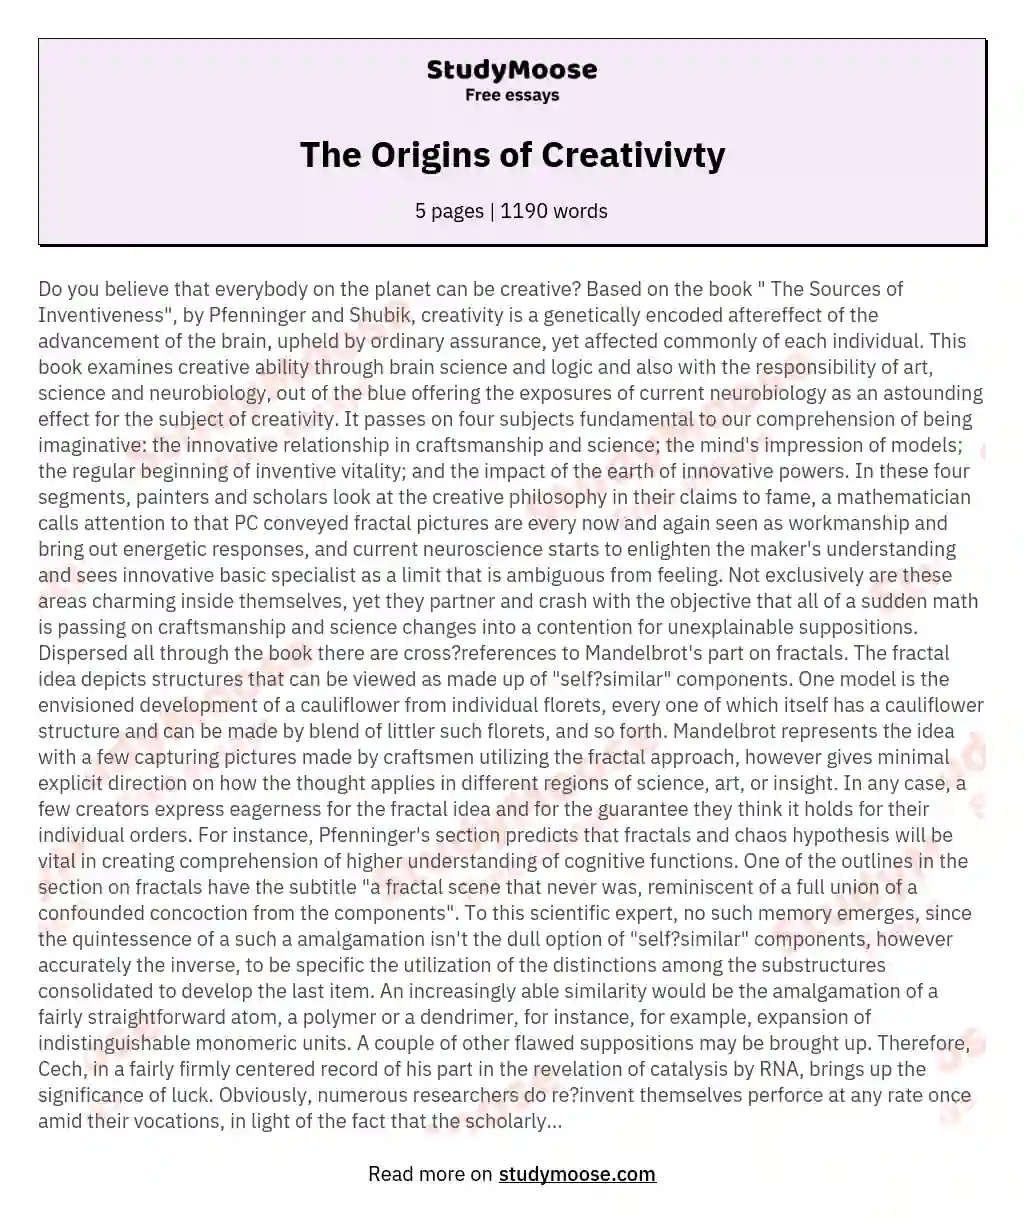 The Origins of Creativivty essay